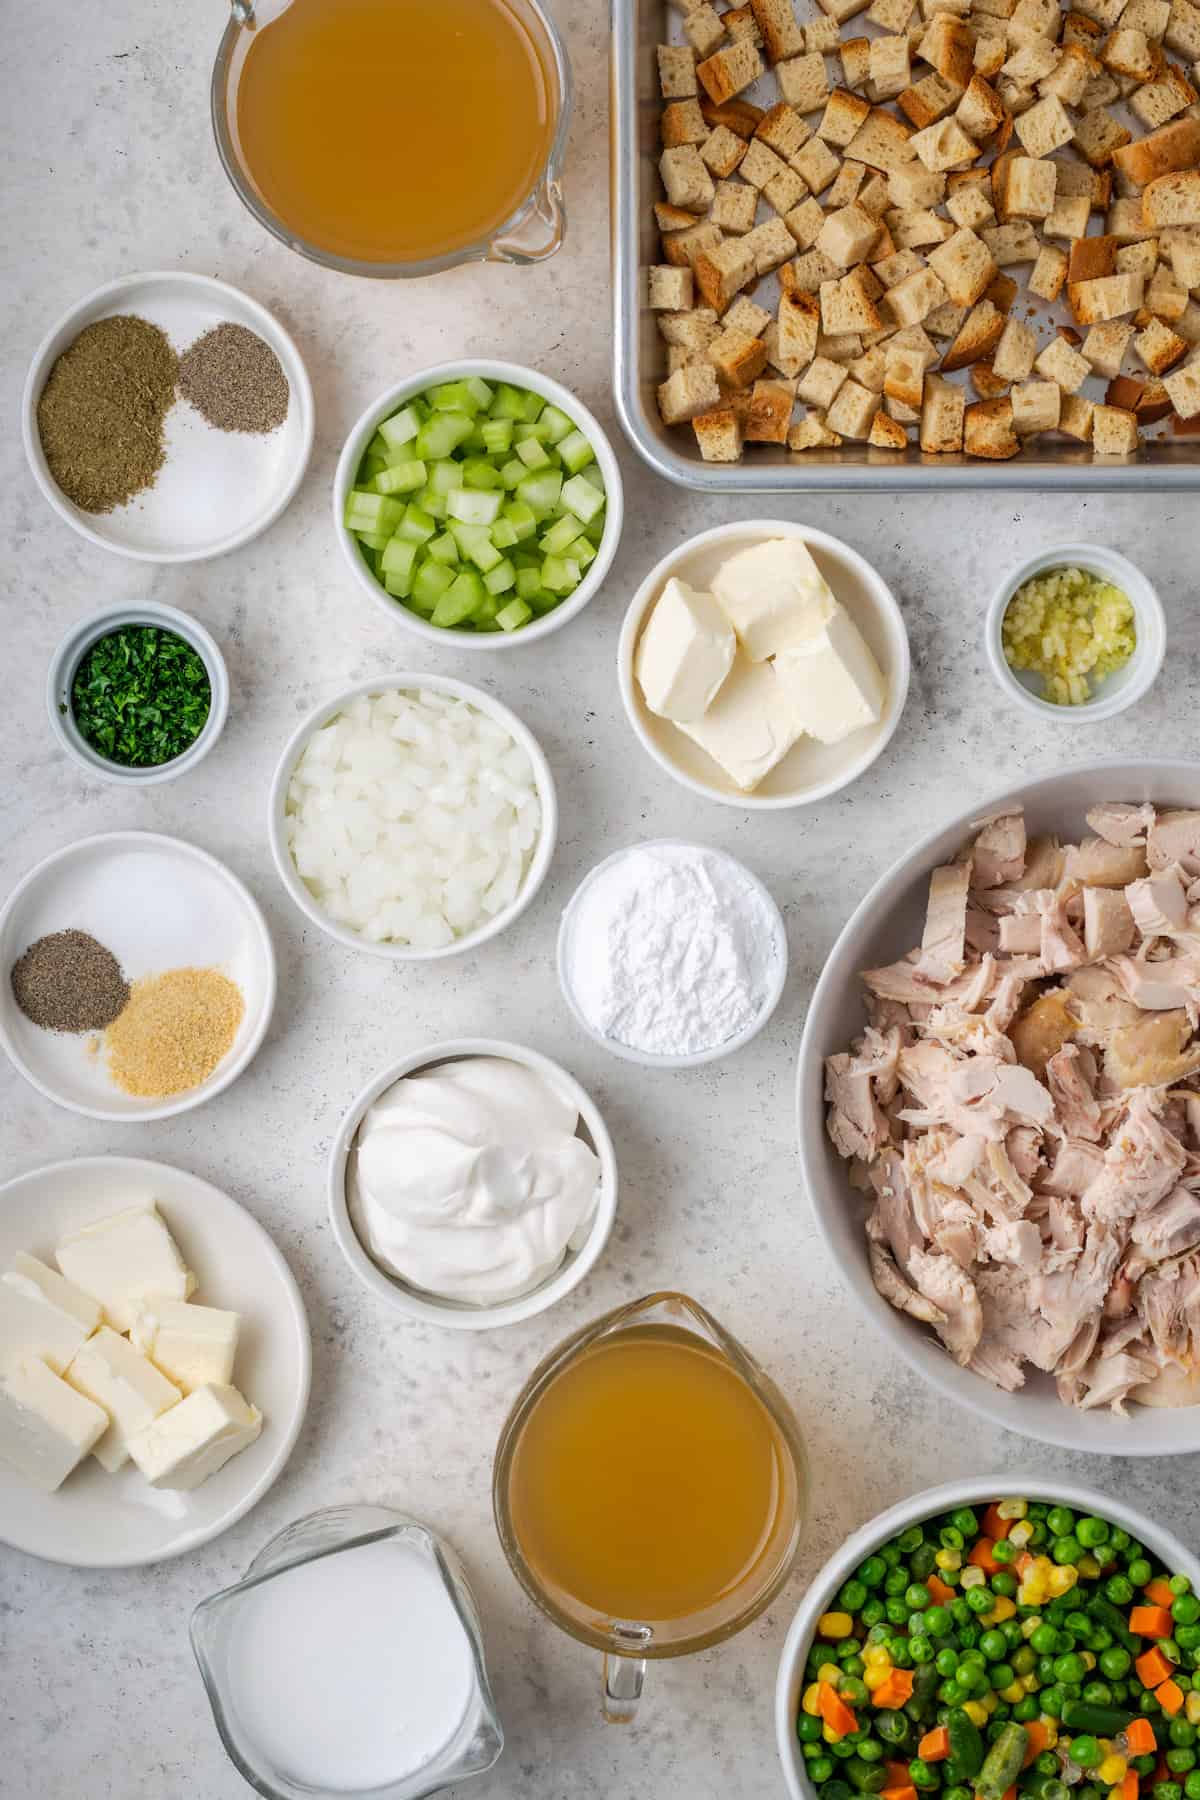 Ingredients for chicken stuffing casserole - chicken, cornstarch, vegetables, bread, milk. seasonings, sour cream.